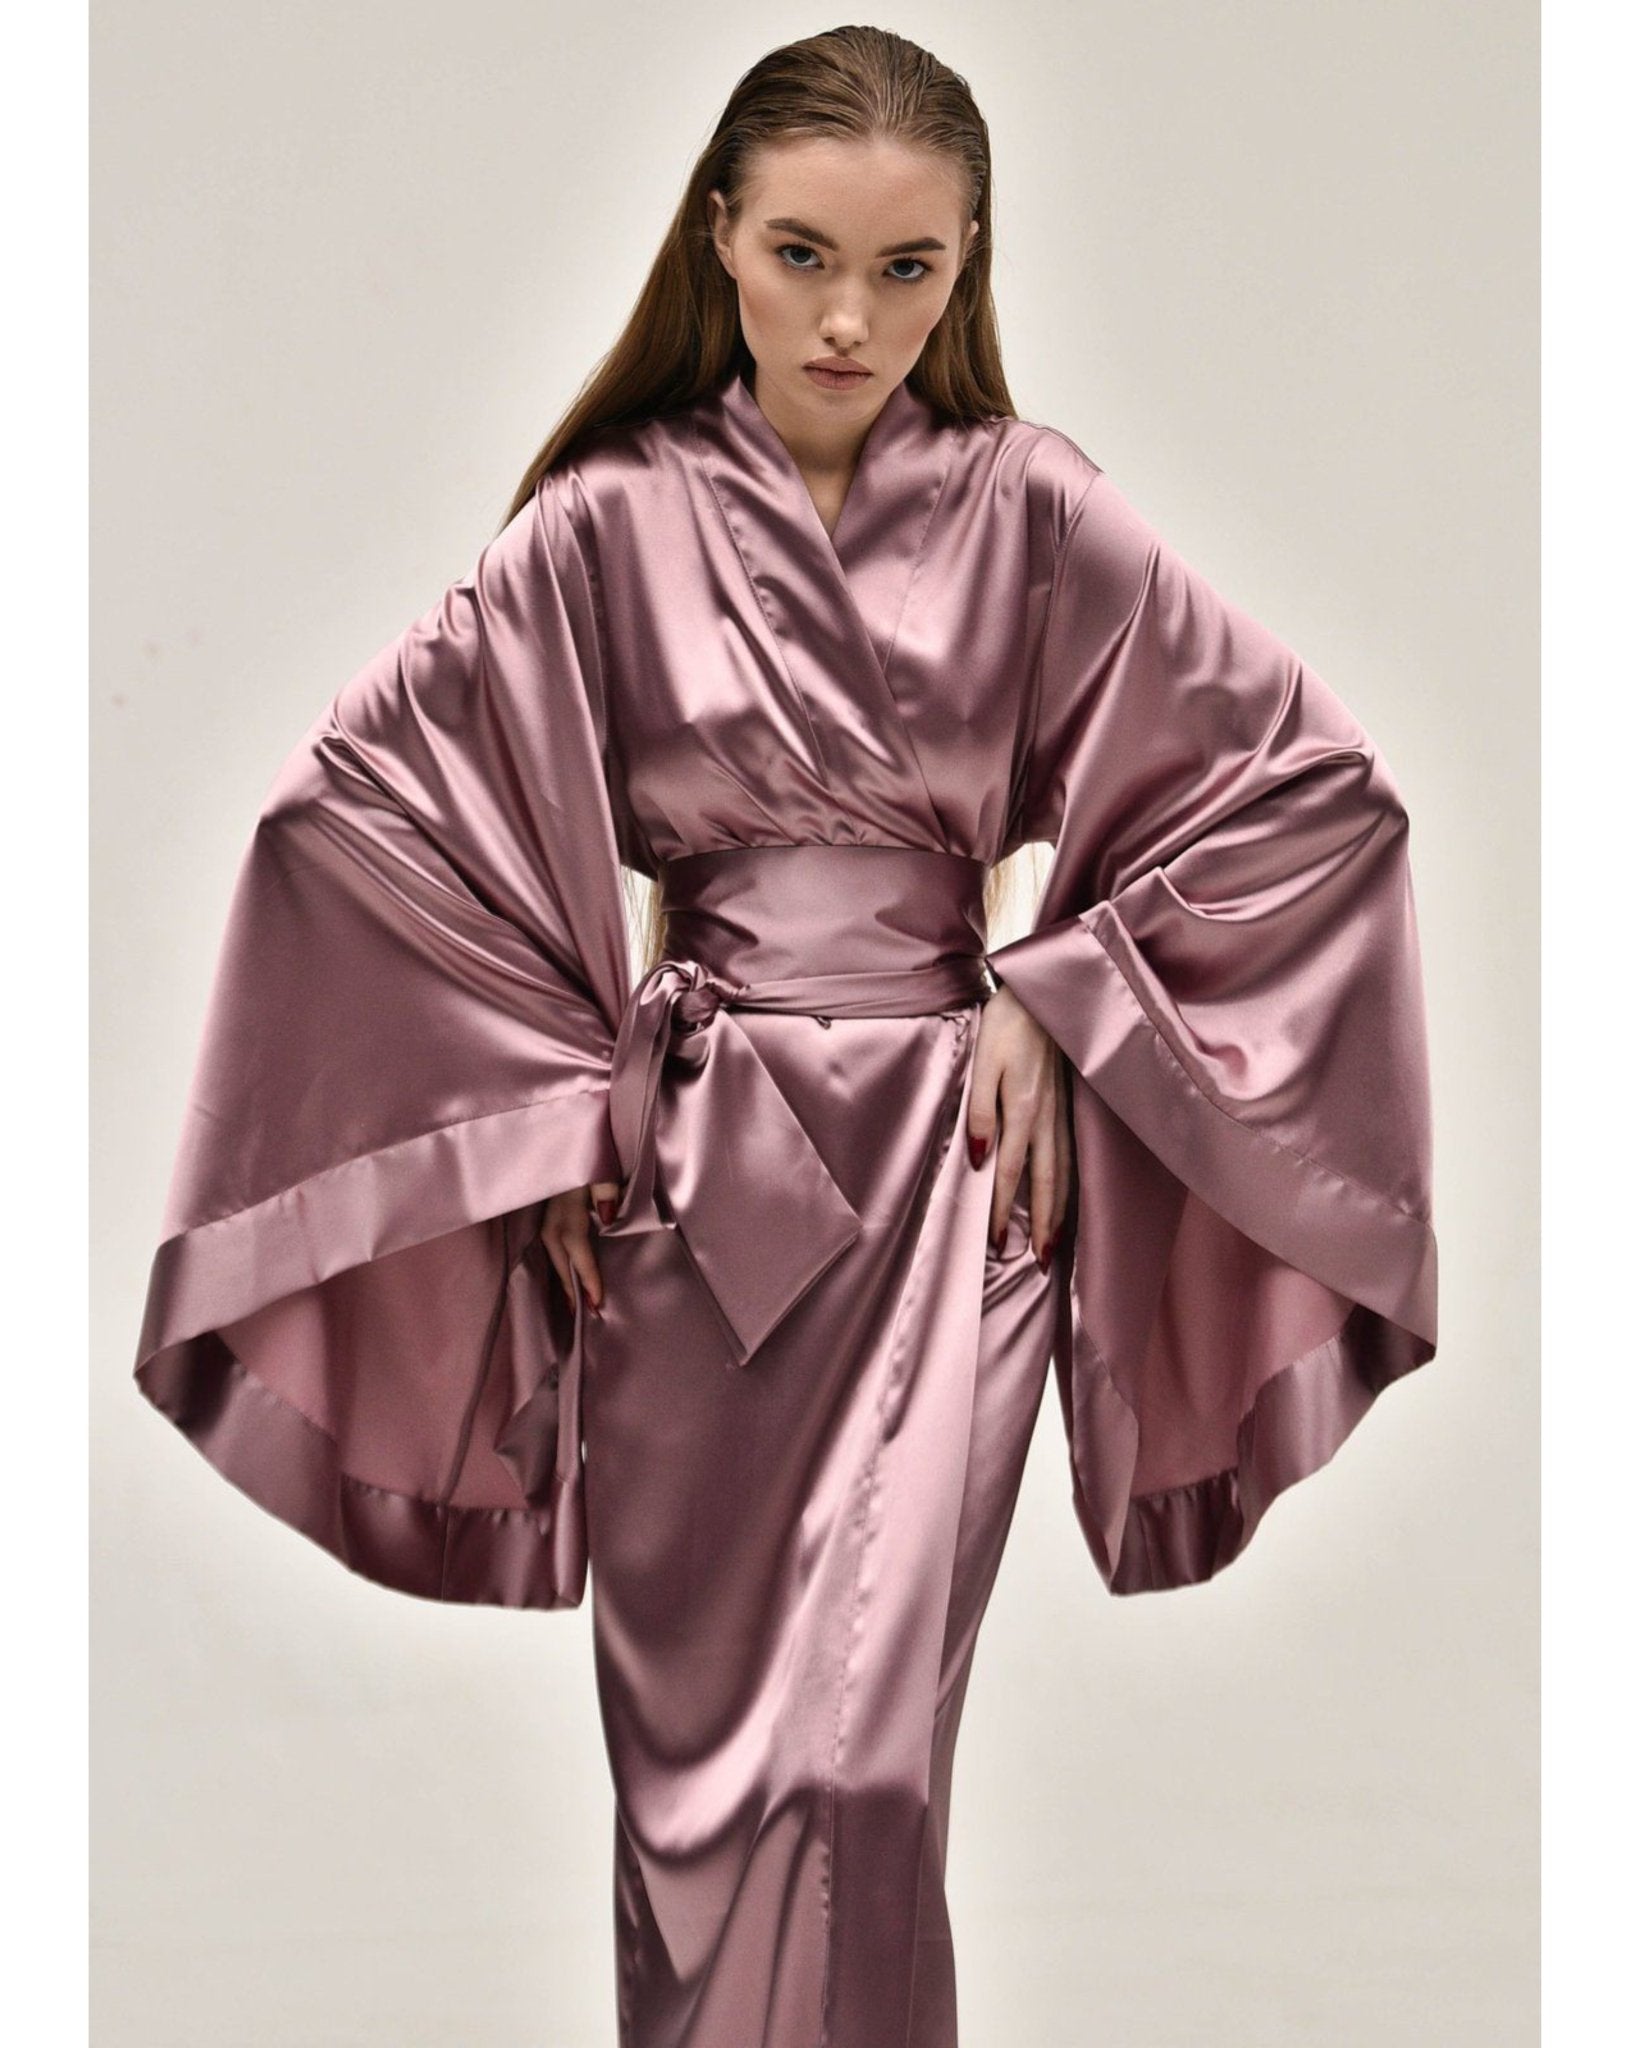 Kimono Robe|Luxury Kimono Satin Robe|Silk Robes KÂfemme Long –